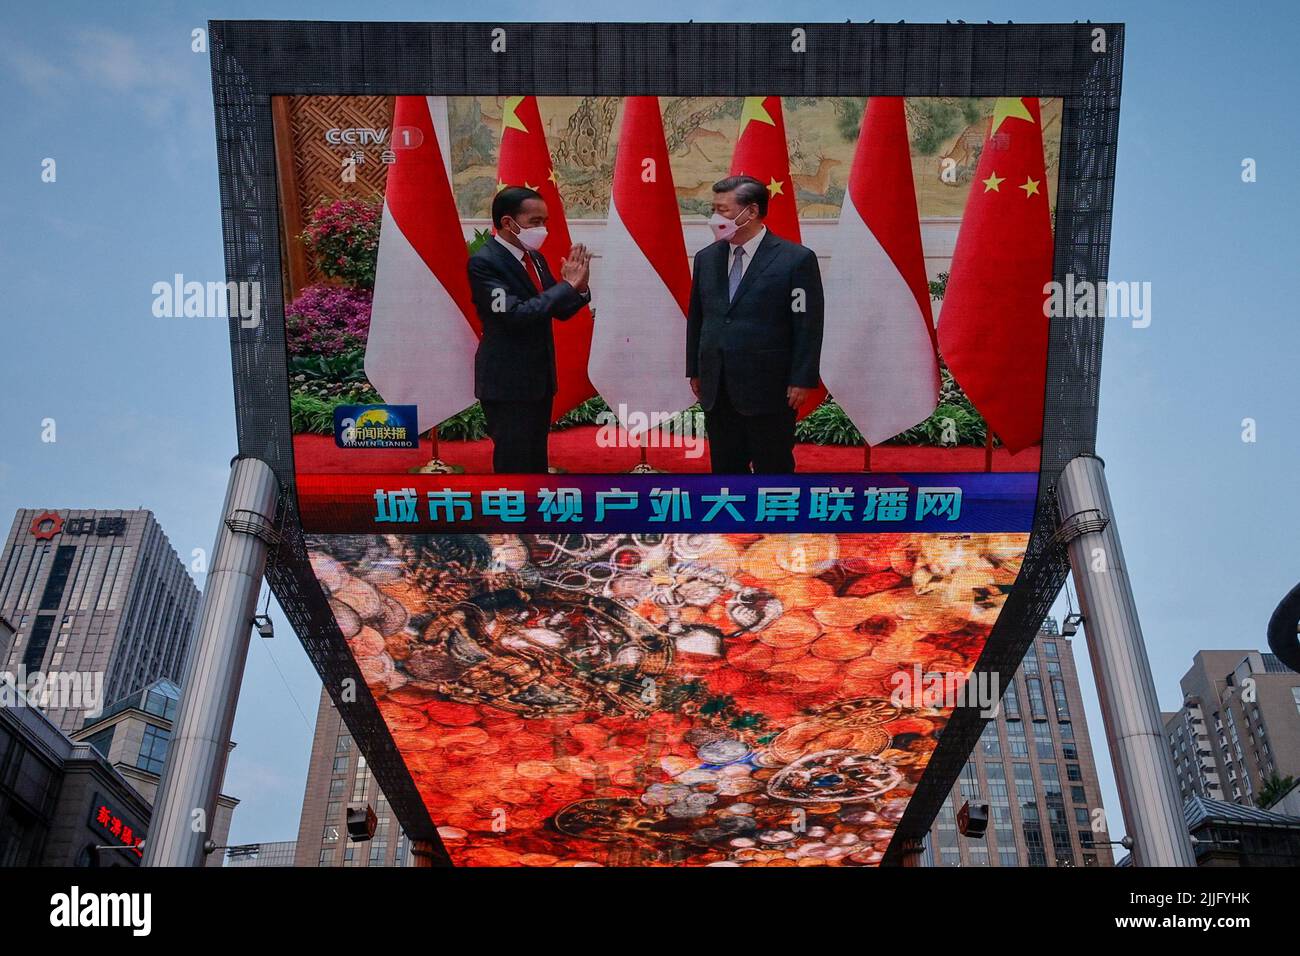 Ein Bildschirm zeigt eine staatliche Videoübertragung des chinesischen Präsidenten Xi Jinping mit dem indonesischen Präsidenten Joko Widodo in einem Einkaufszentrum in Peking, China, am 26. Juli 2022. REUTERS/Thomas Peter Stockfoto